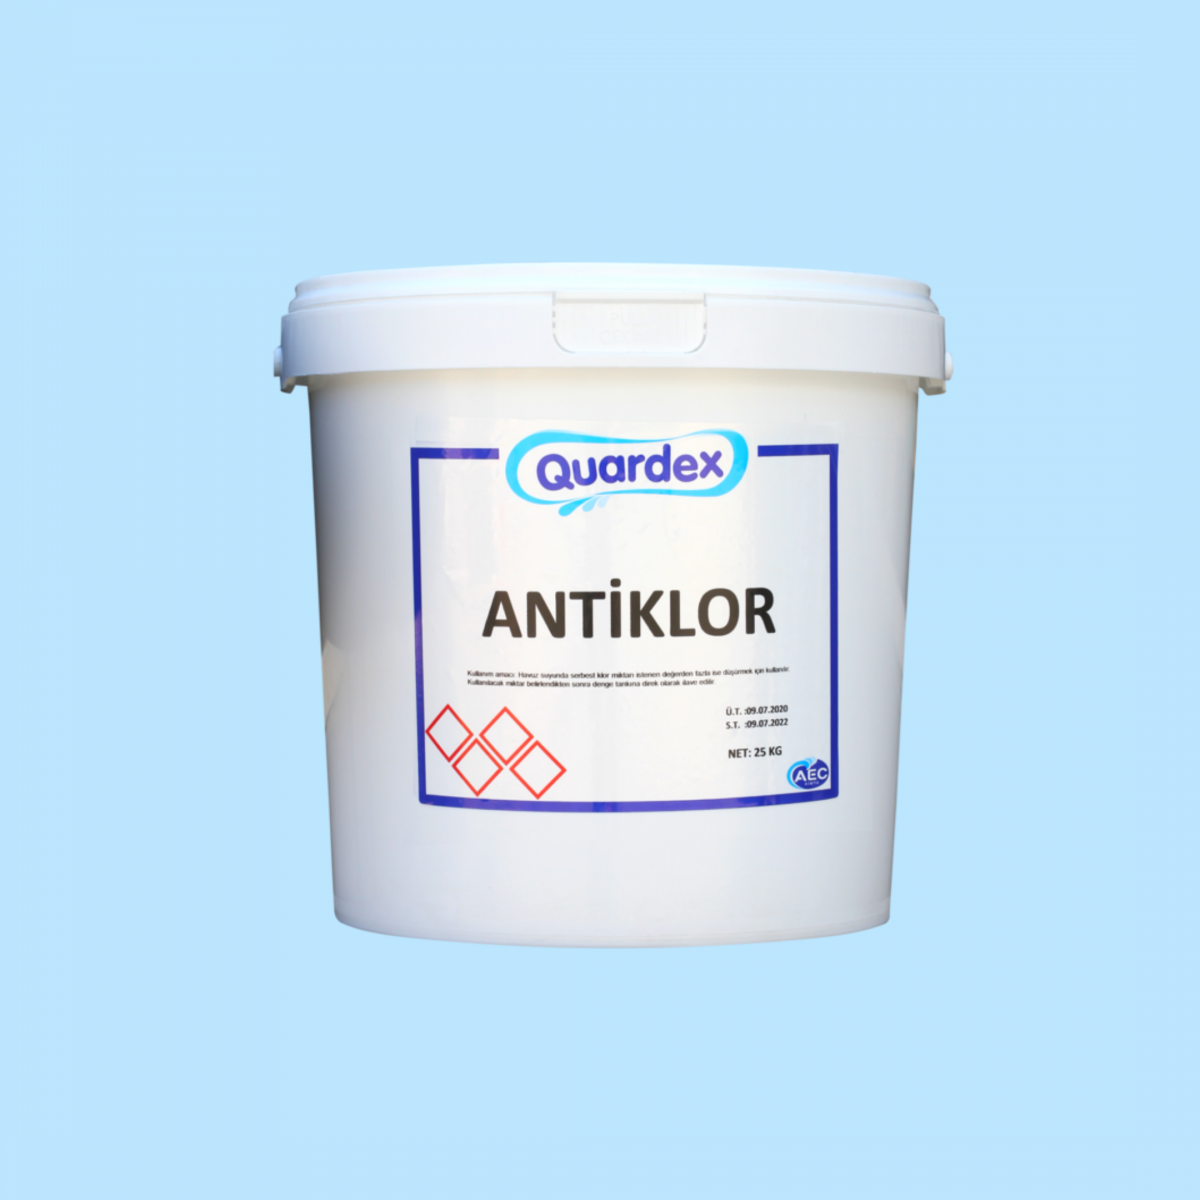 Quardex Antiklor